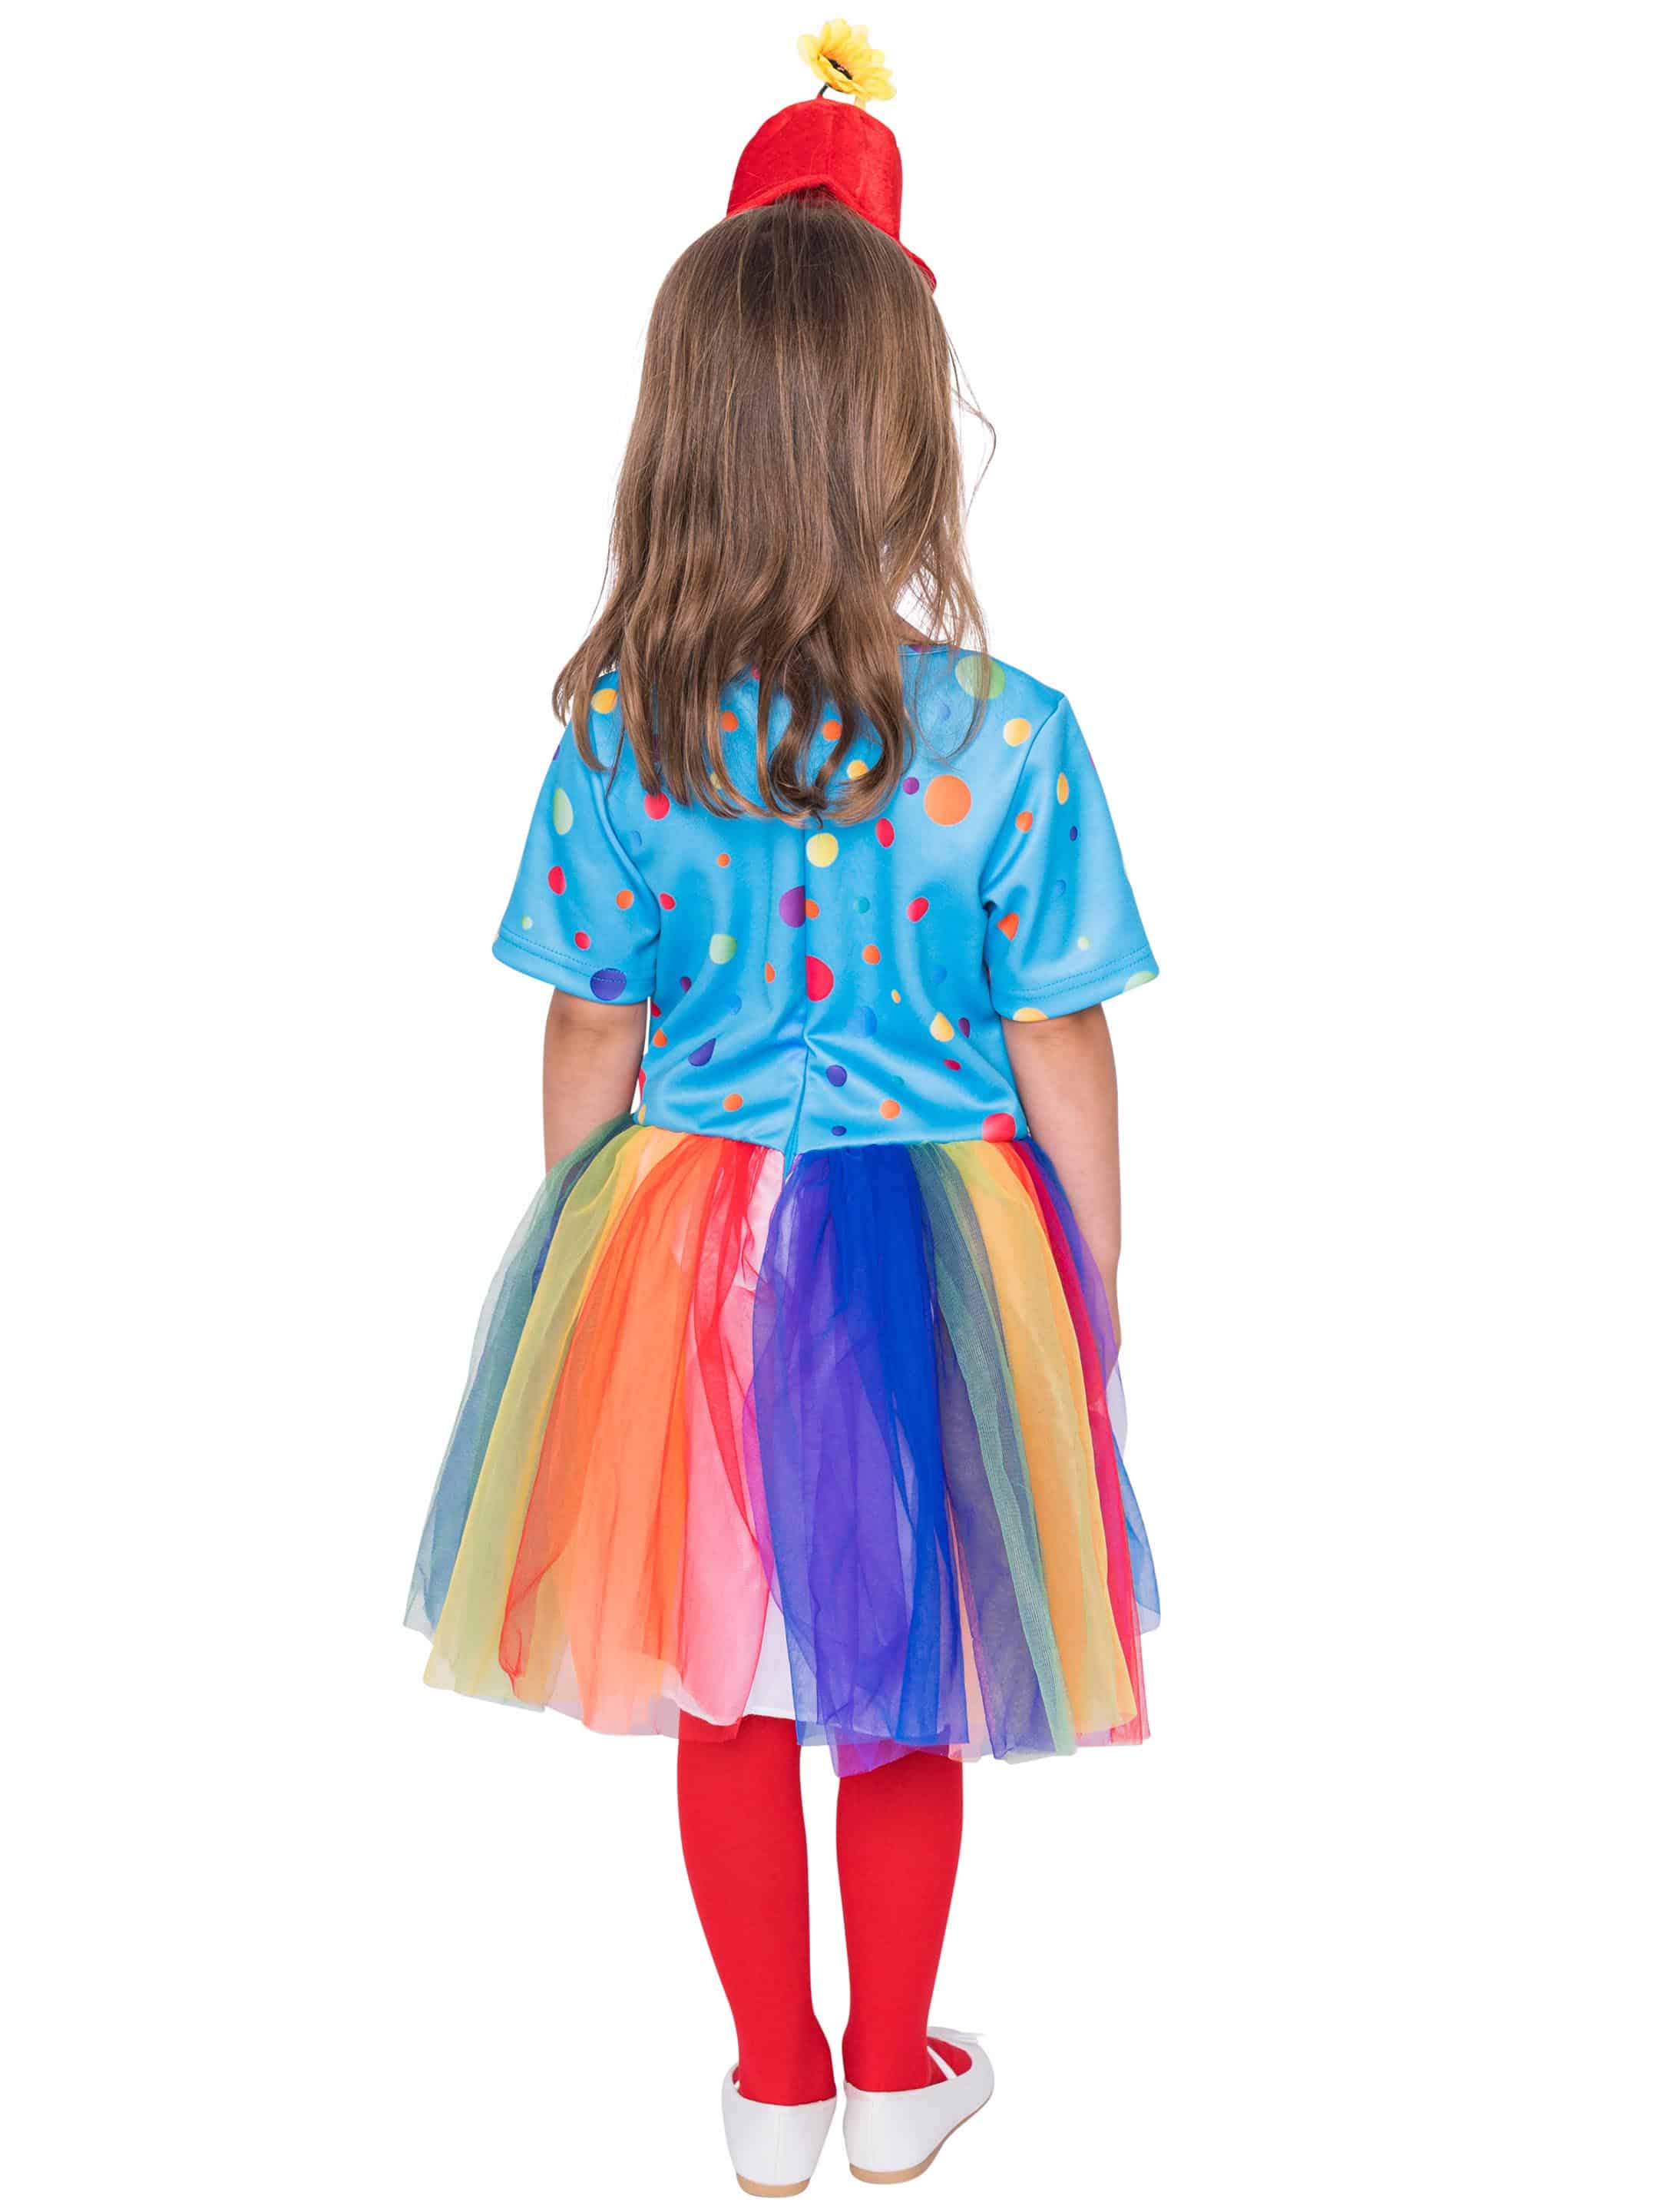 Kleid Regenbogen Clown Kinder bunt 128